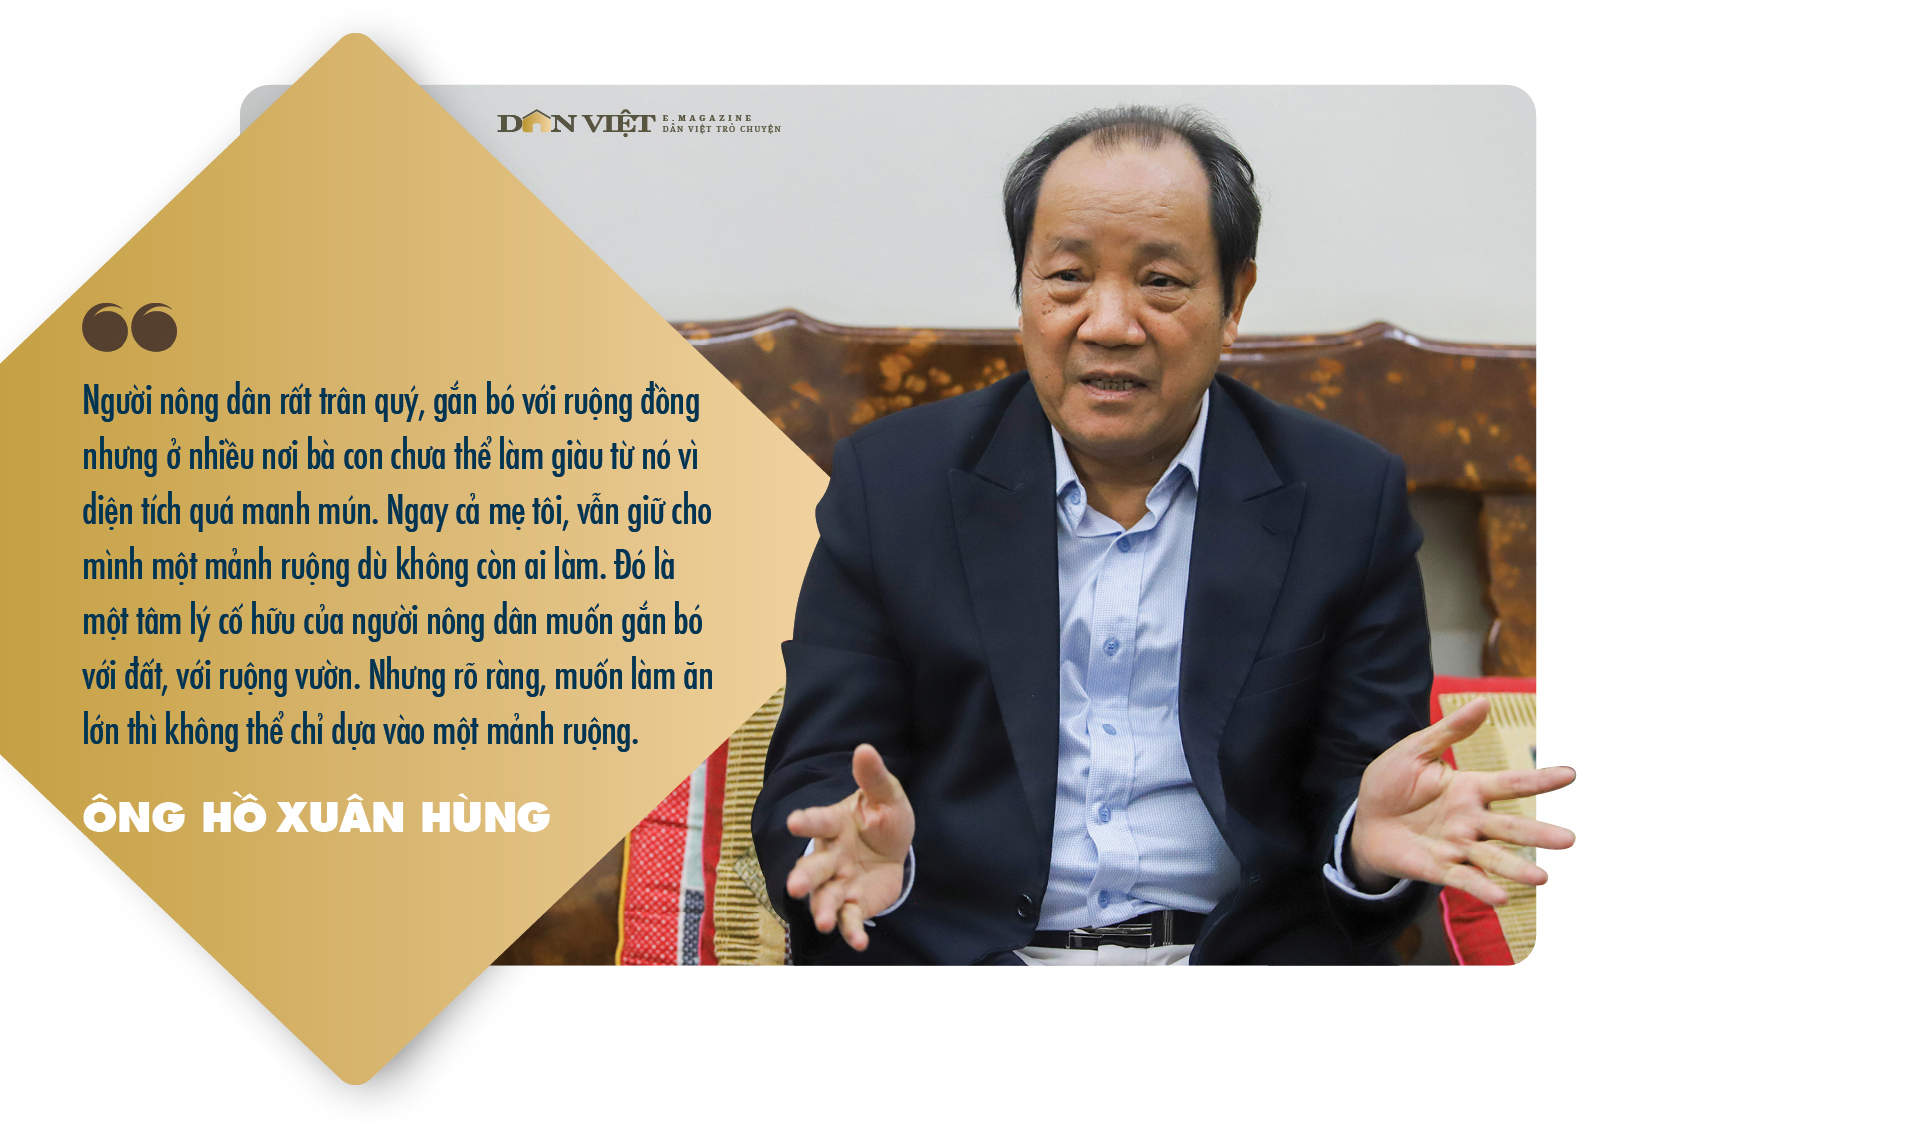 Nguyên Thứ trưởng Bộ NNPTNT, nguyên Chủ tịch UBND tỉnh Nghệ An Hồ Xuân Hùng: &quot;Một đời nặng nợ với dân với mình&quot; - Ảnh 8.